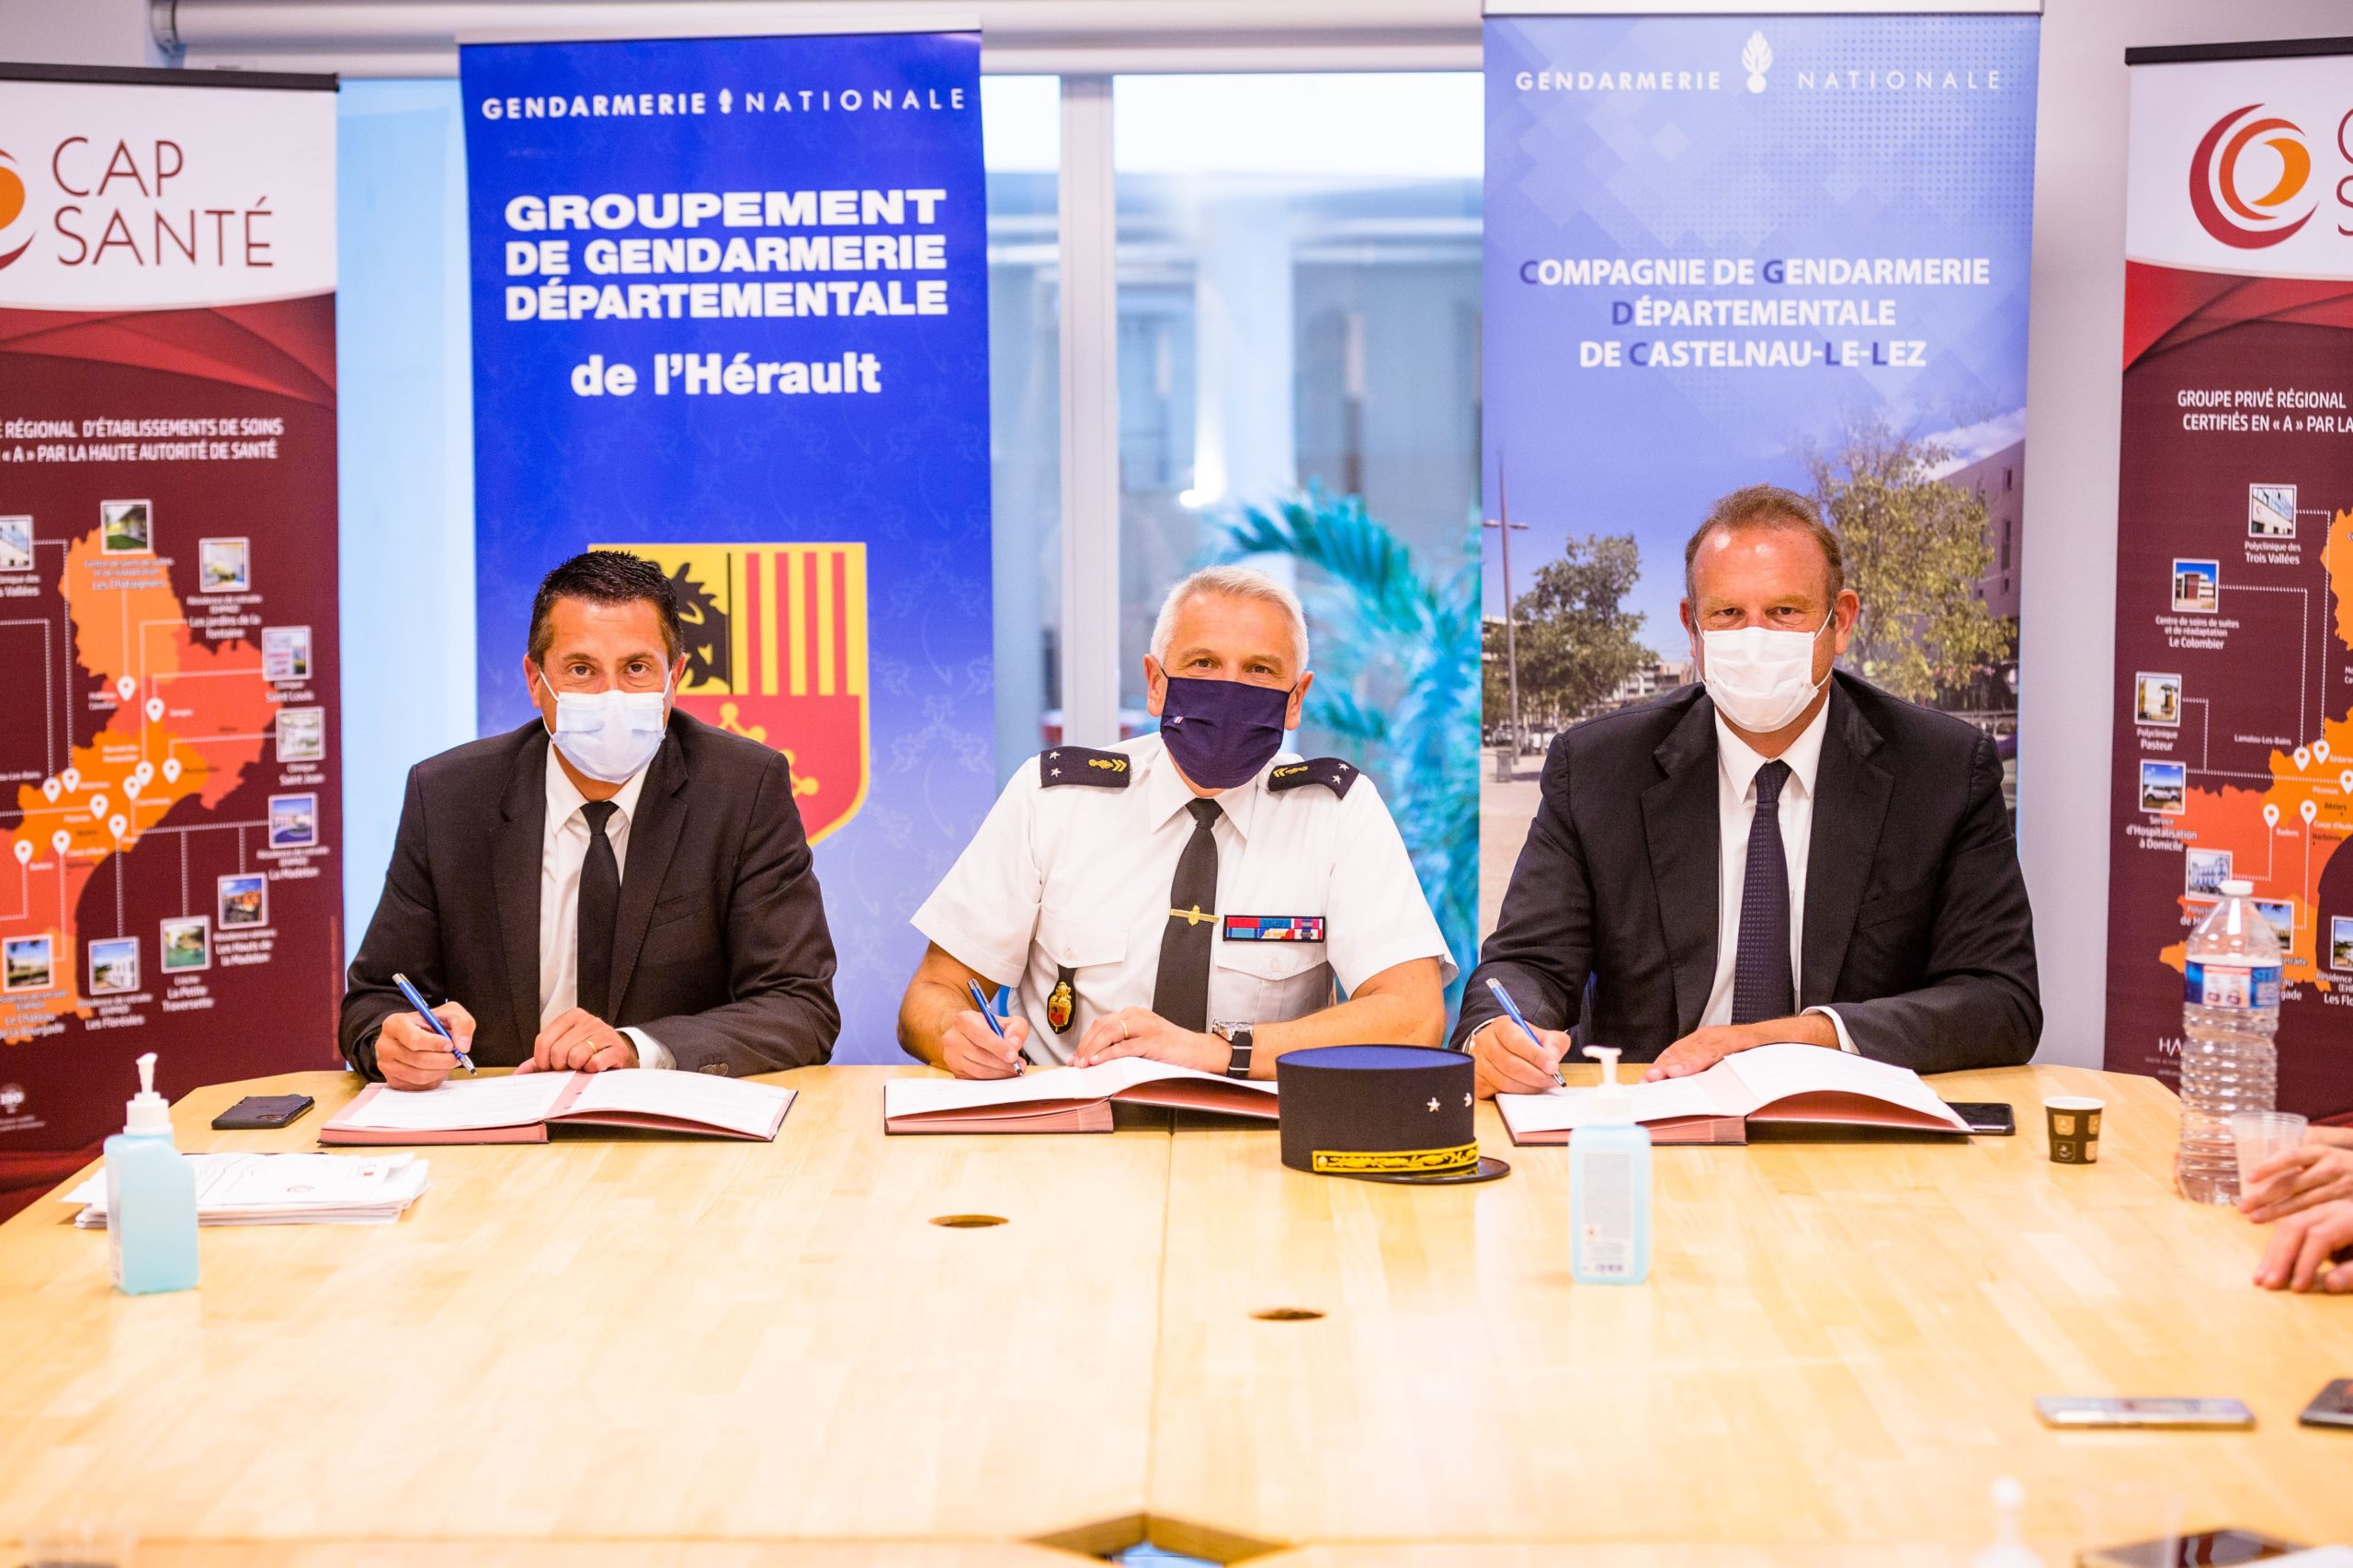 Convention gendarmerie clinique Saint Jean - Sud de France